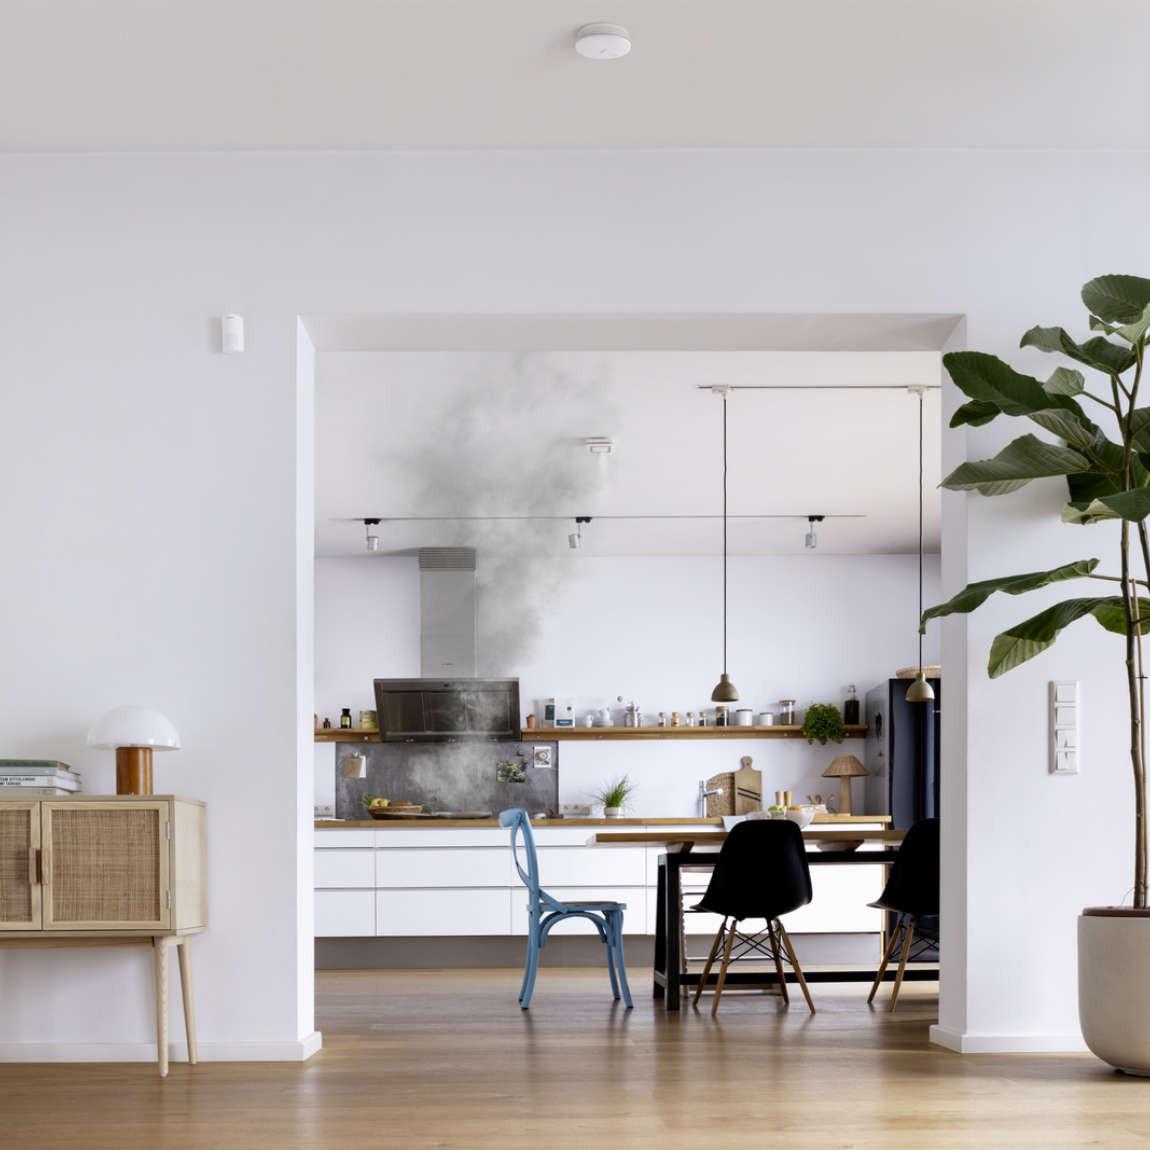 Bosch Smart Home Rauchwarnmelder II an Decke mit Rauch aus Küche